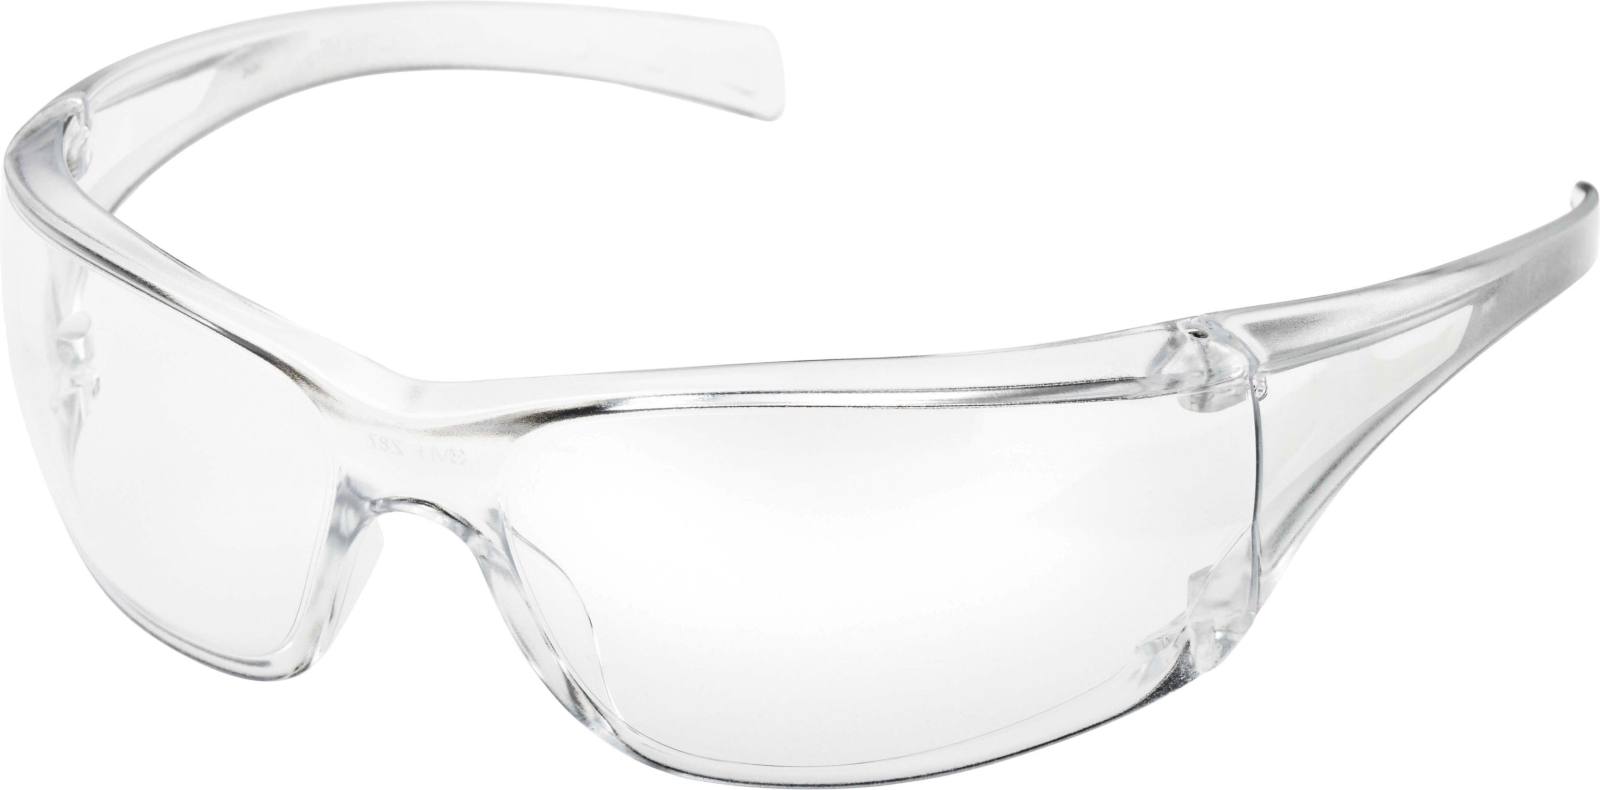 3M Gafas de protección Virtua AF, tratamiento antirrayas/antivaho, lente gris, 715002AF